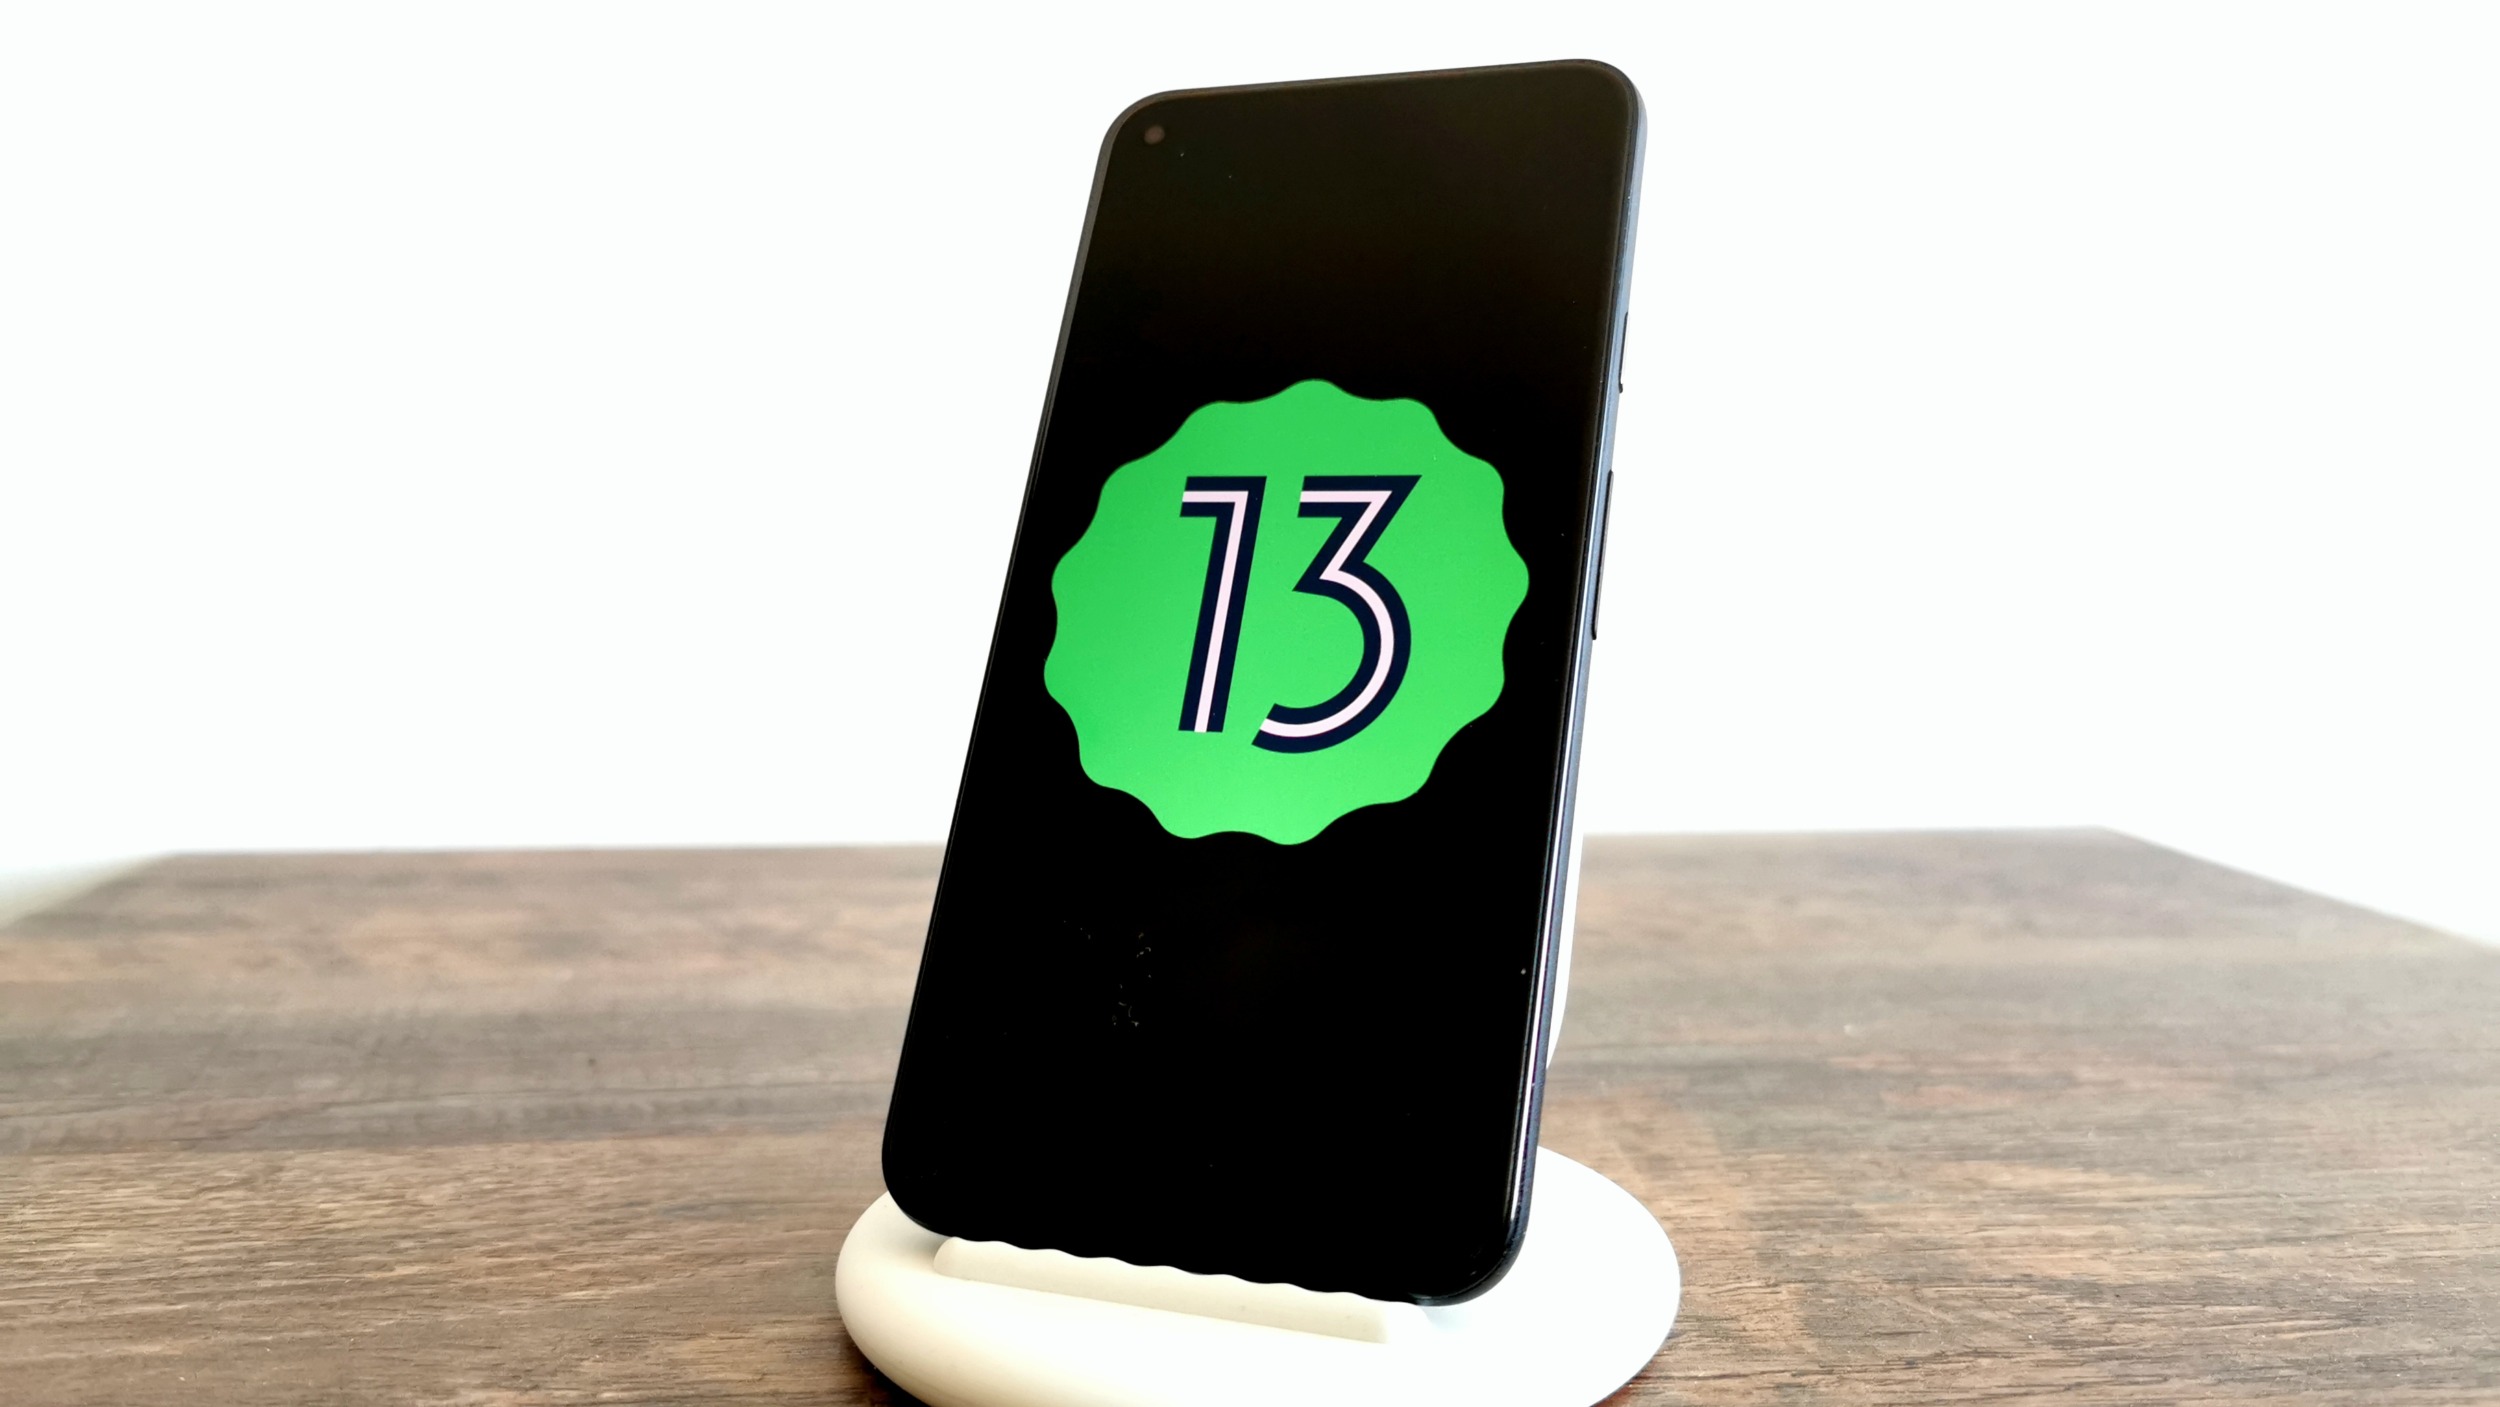 Novinky v Androidu 13 – práce se schránkou, profily, spořič a další